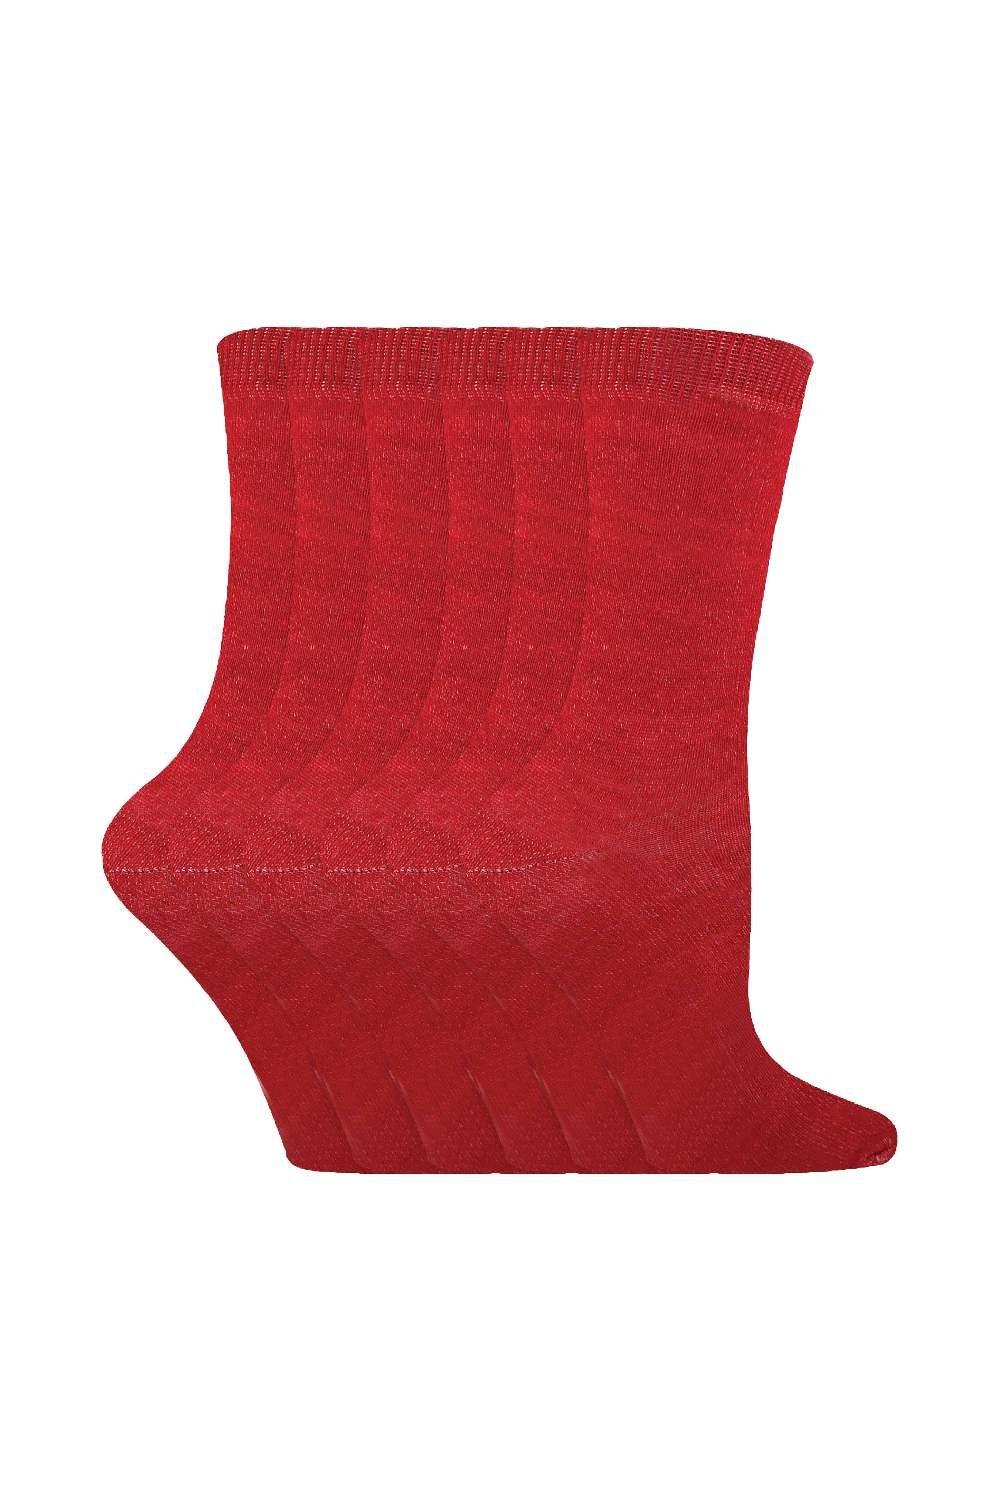 6 пар однотонных повседневных хлопковых носков Sock Snob, красный